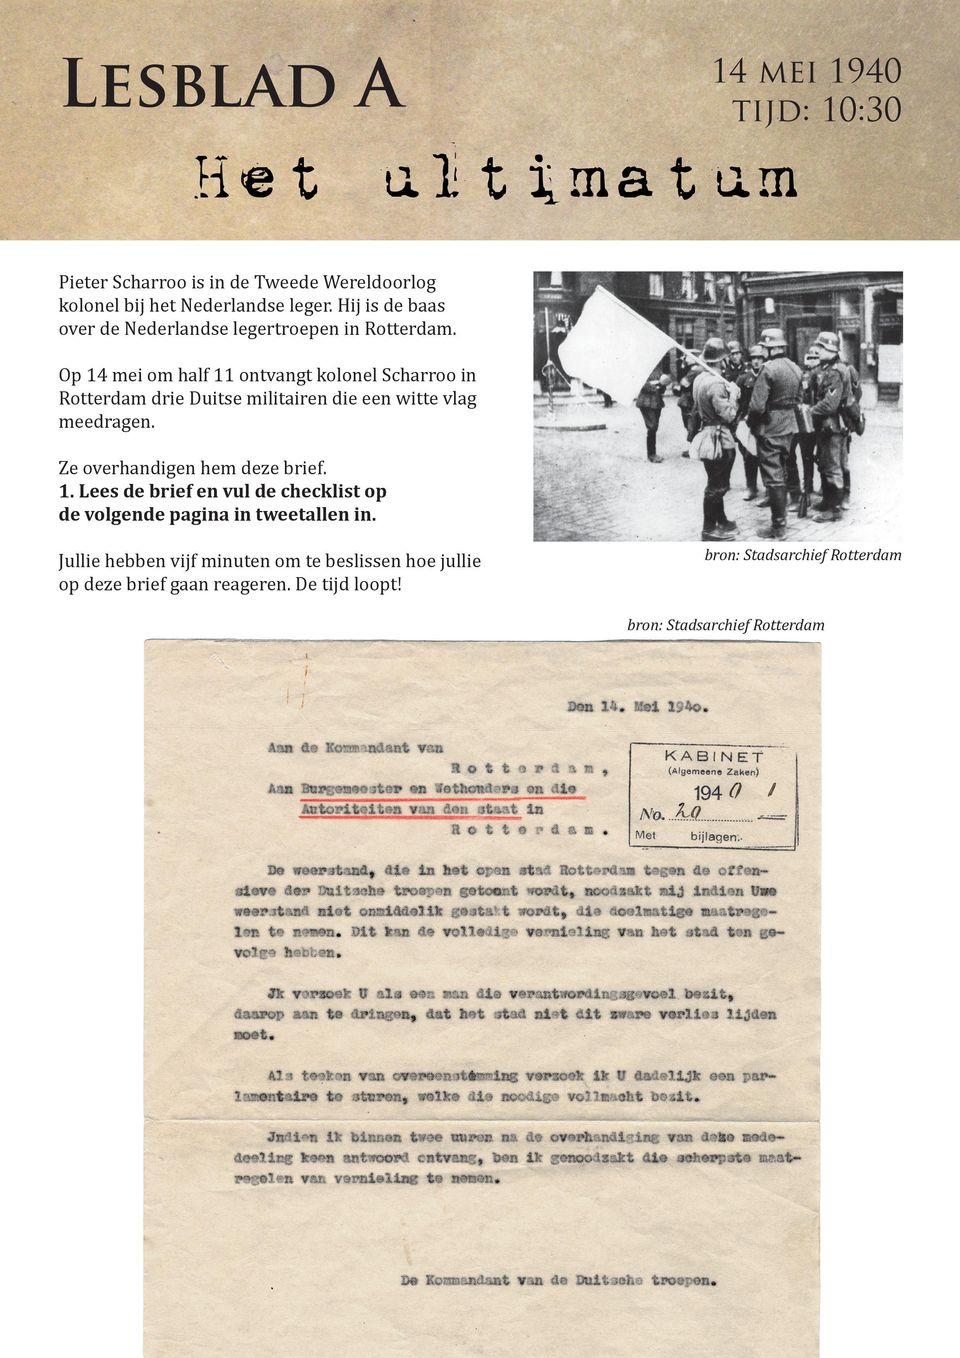 Op 14 mei om half 11 ontvangt kolonel Scharroo in Rotterdam drie Duitse militairen die een witte vlag meedragen.